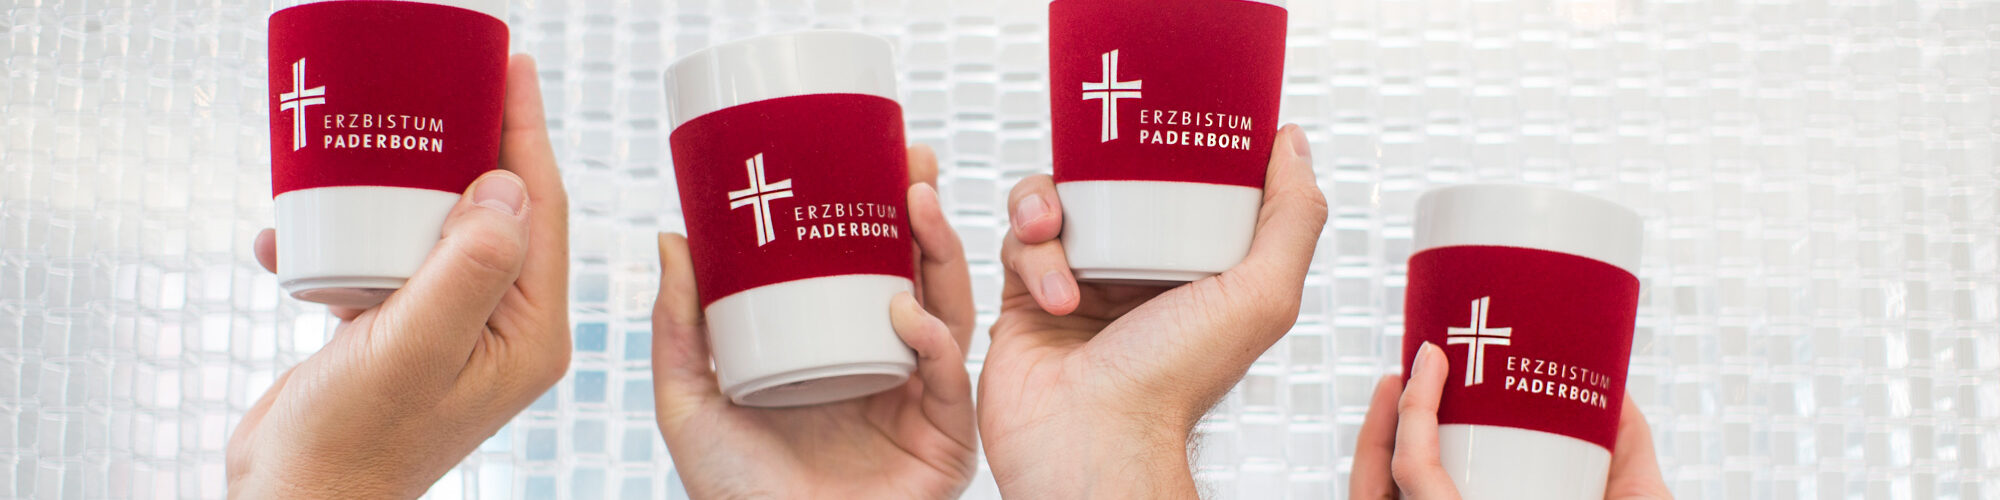 Kaffeebecher des Erzbistums Paderborn